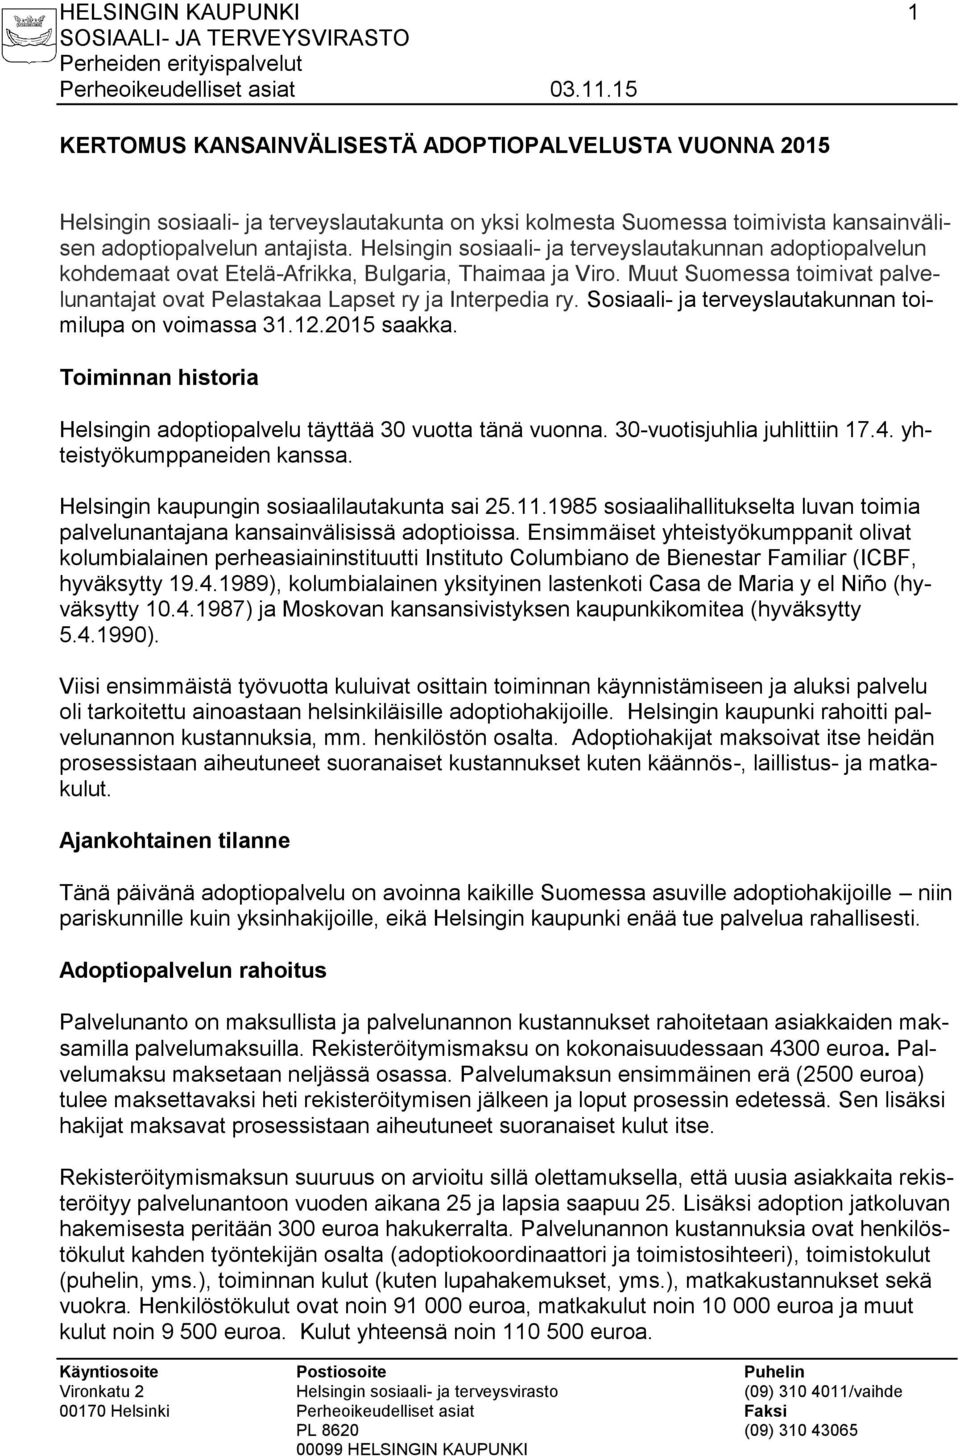 Sosiaali- ja terveyslautakunnan toimilupa on voimassa 31.12.2015 saakka. Toiminnan historia Helsingin adoptiopalvelu täyttää 30 vuotta tänä vuonna. 30-vuotisjuhlia juhlittiin 17.4.